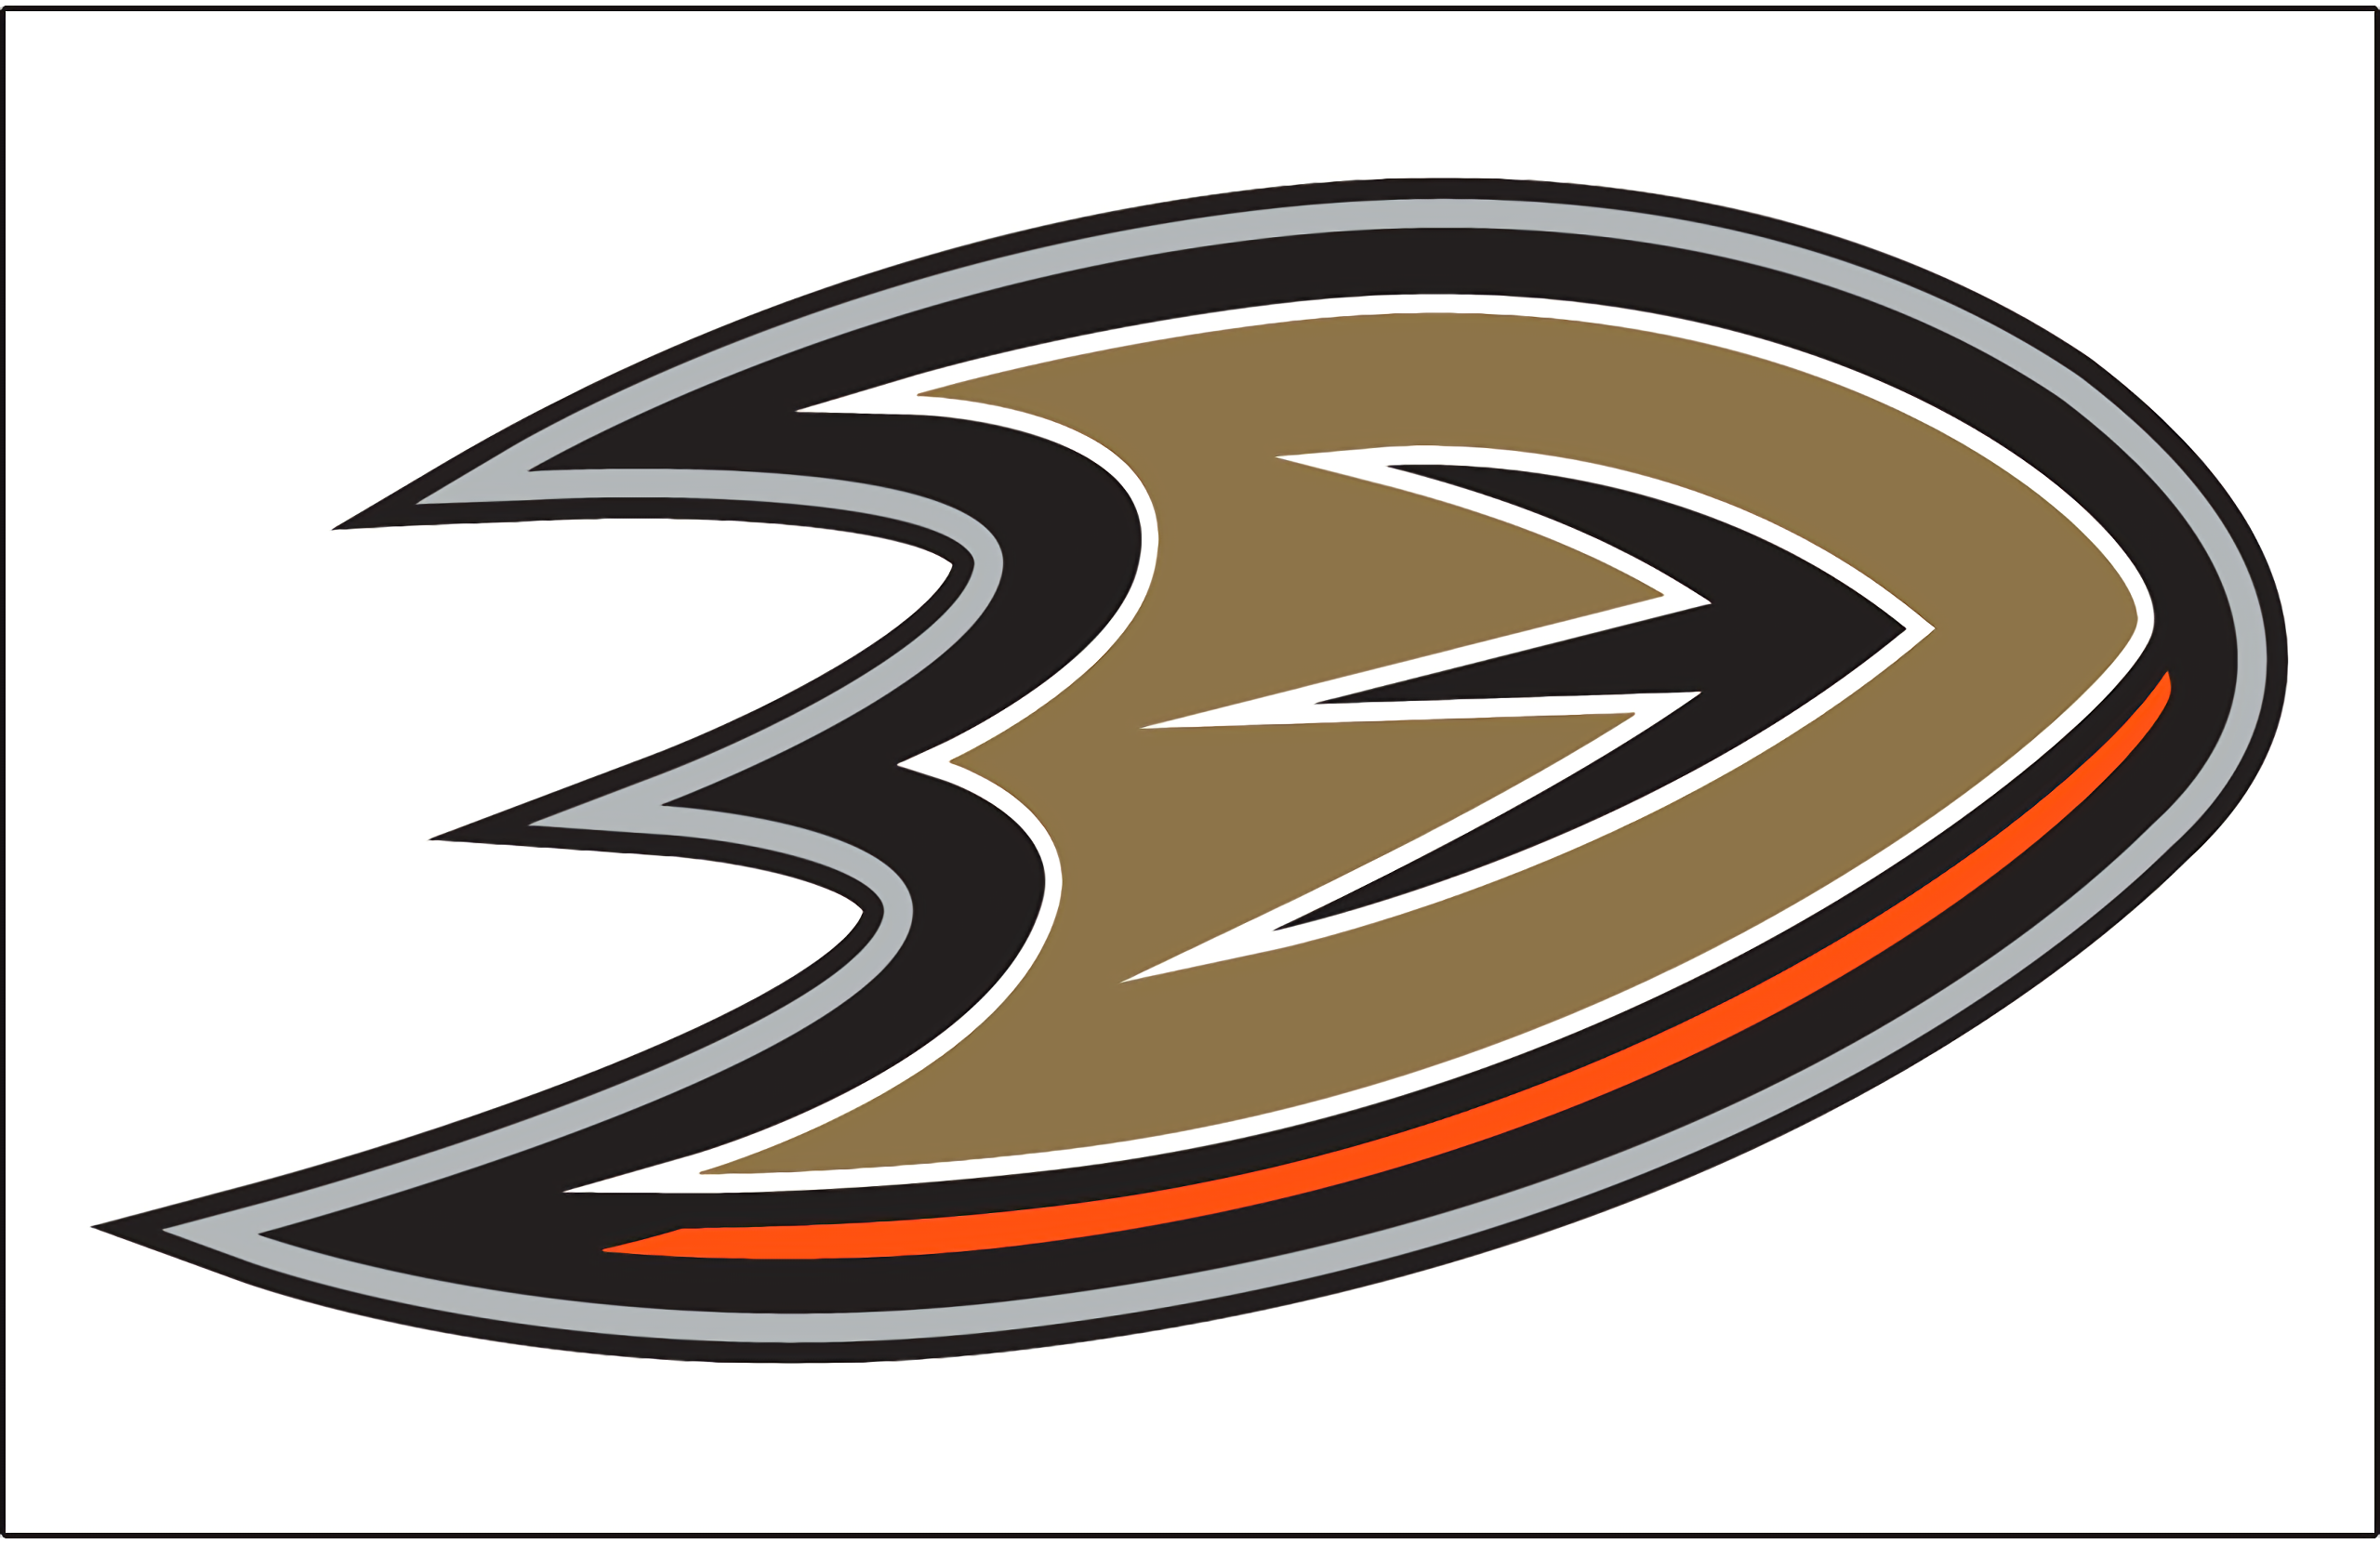 Anaheim Ducks 2560x1661